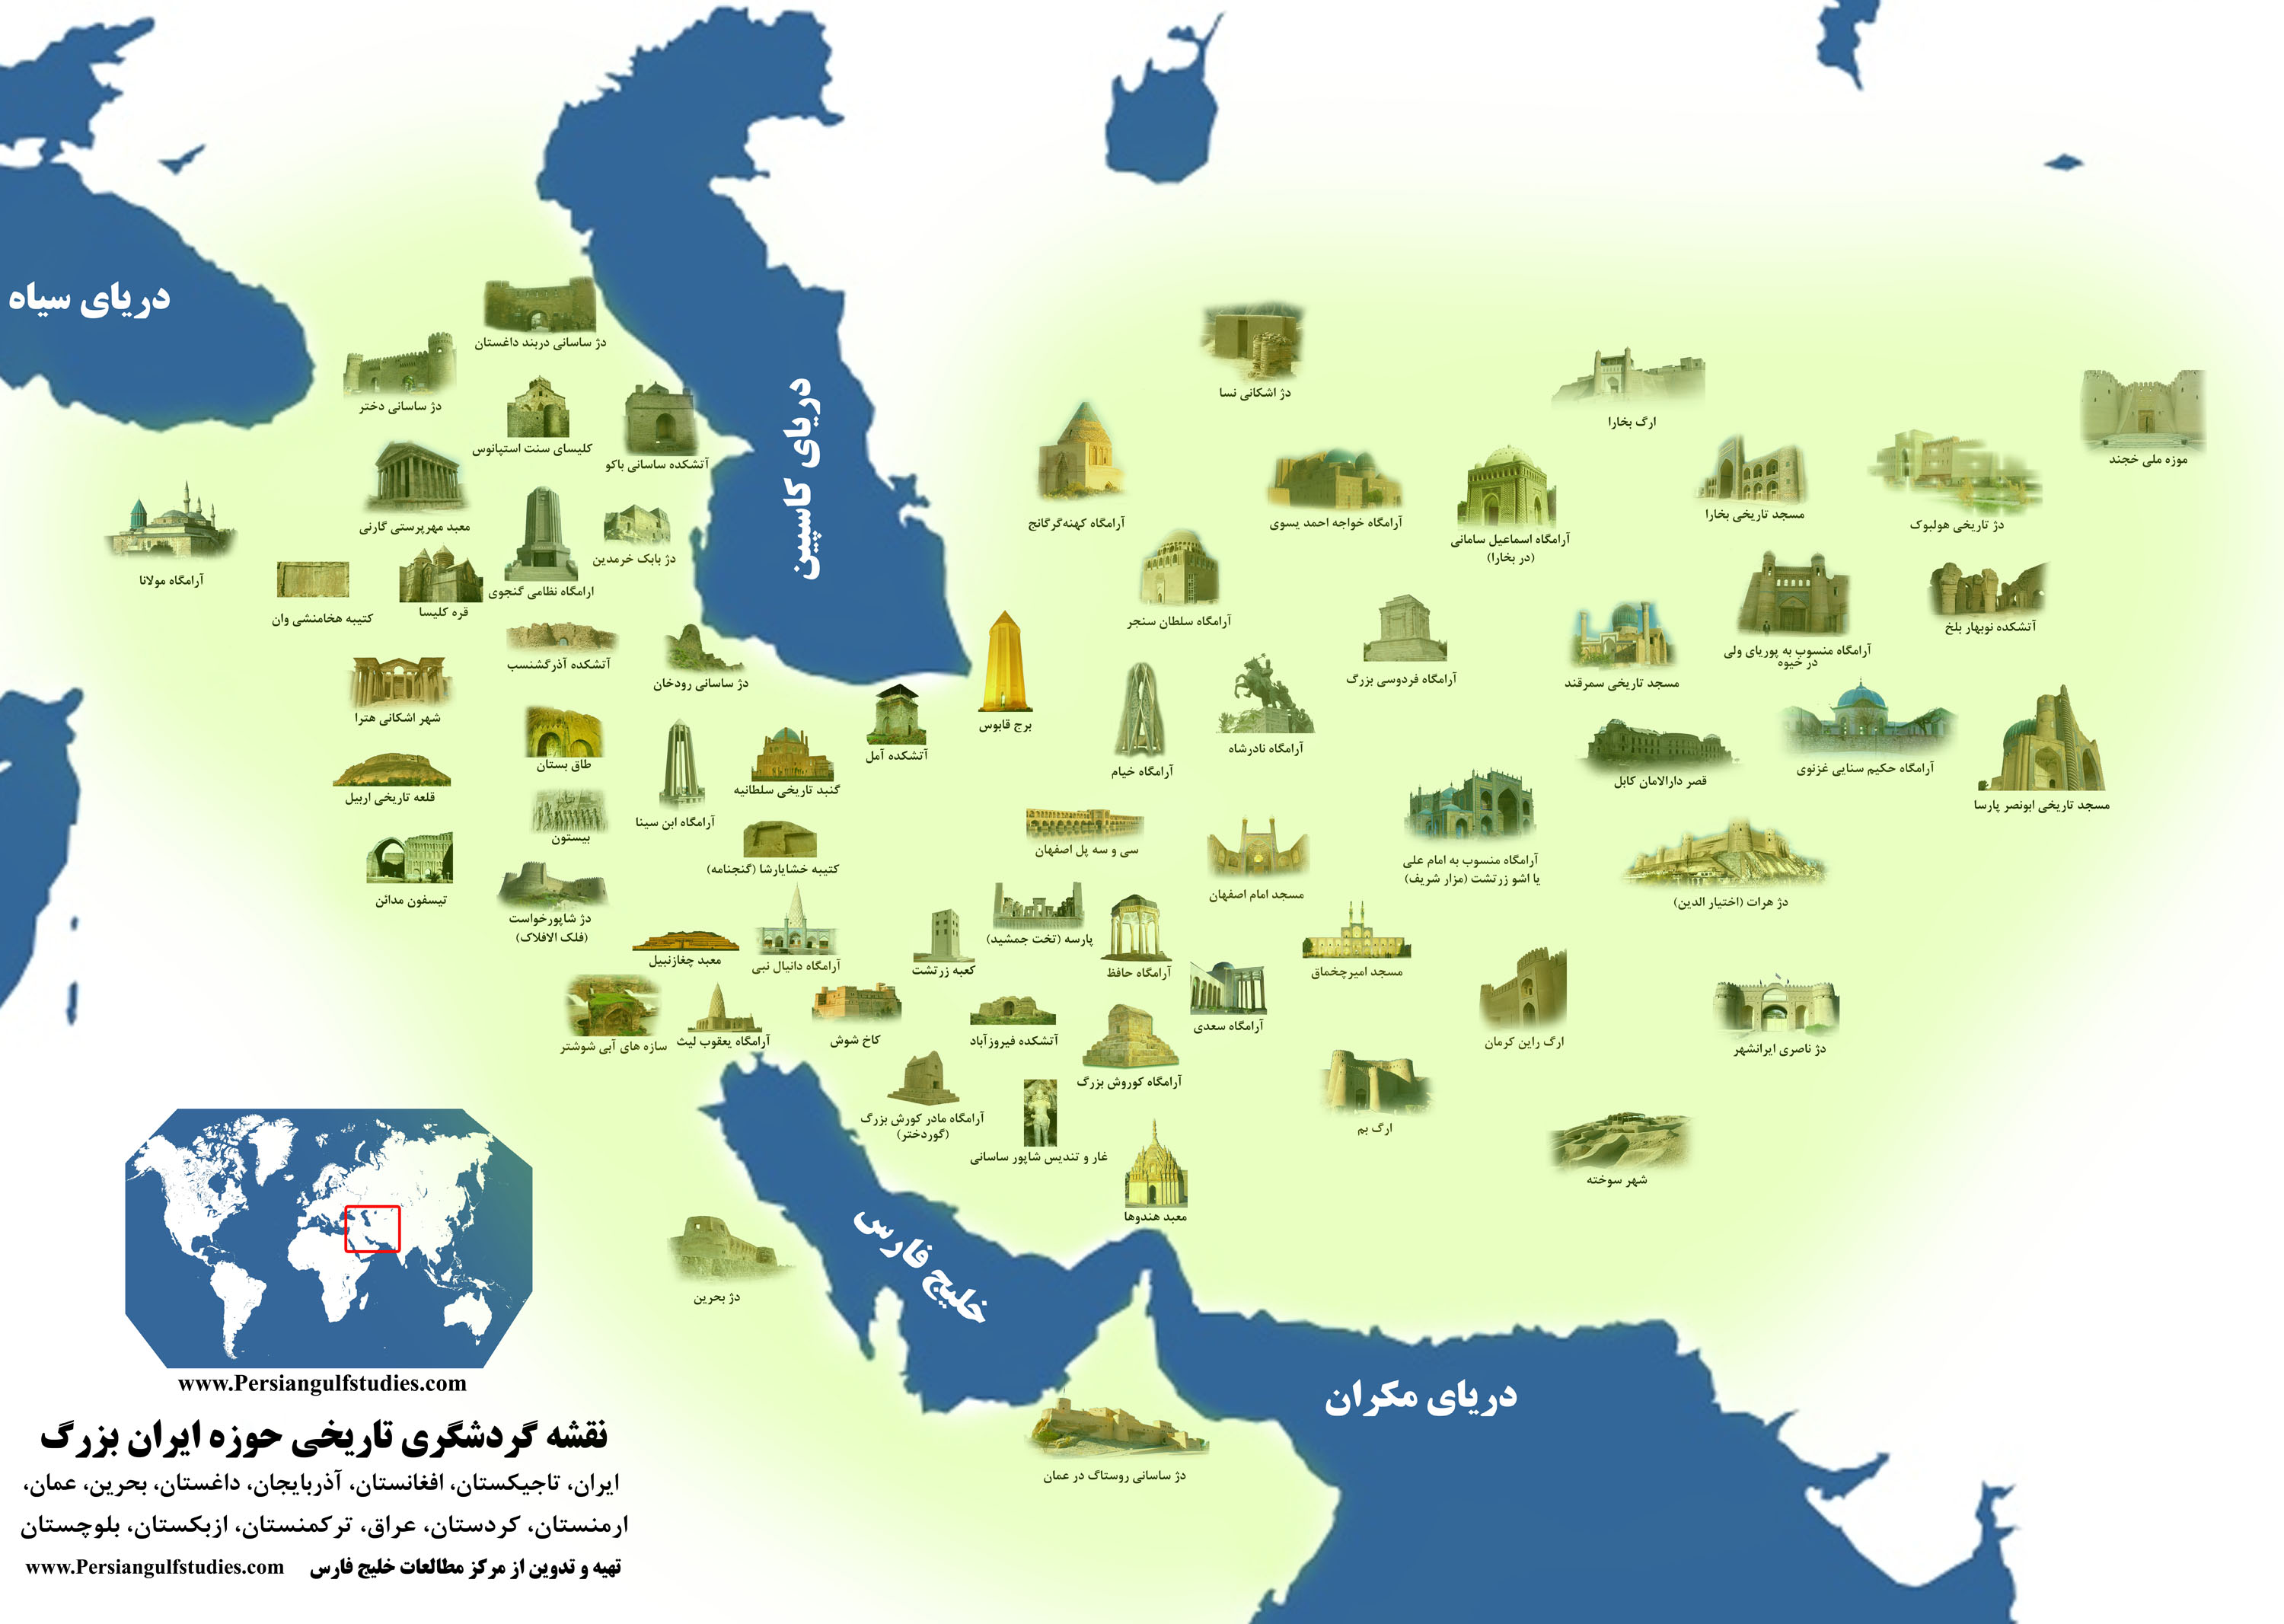 نقشه ی گردشگری ایران فرهنگی(ایران بزرگ)